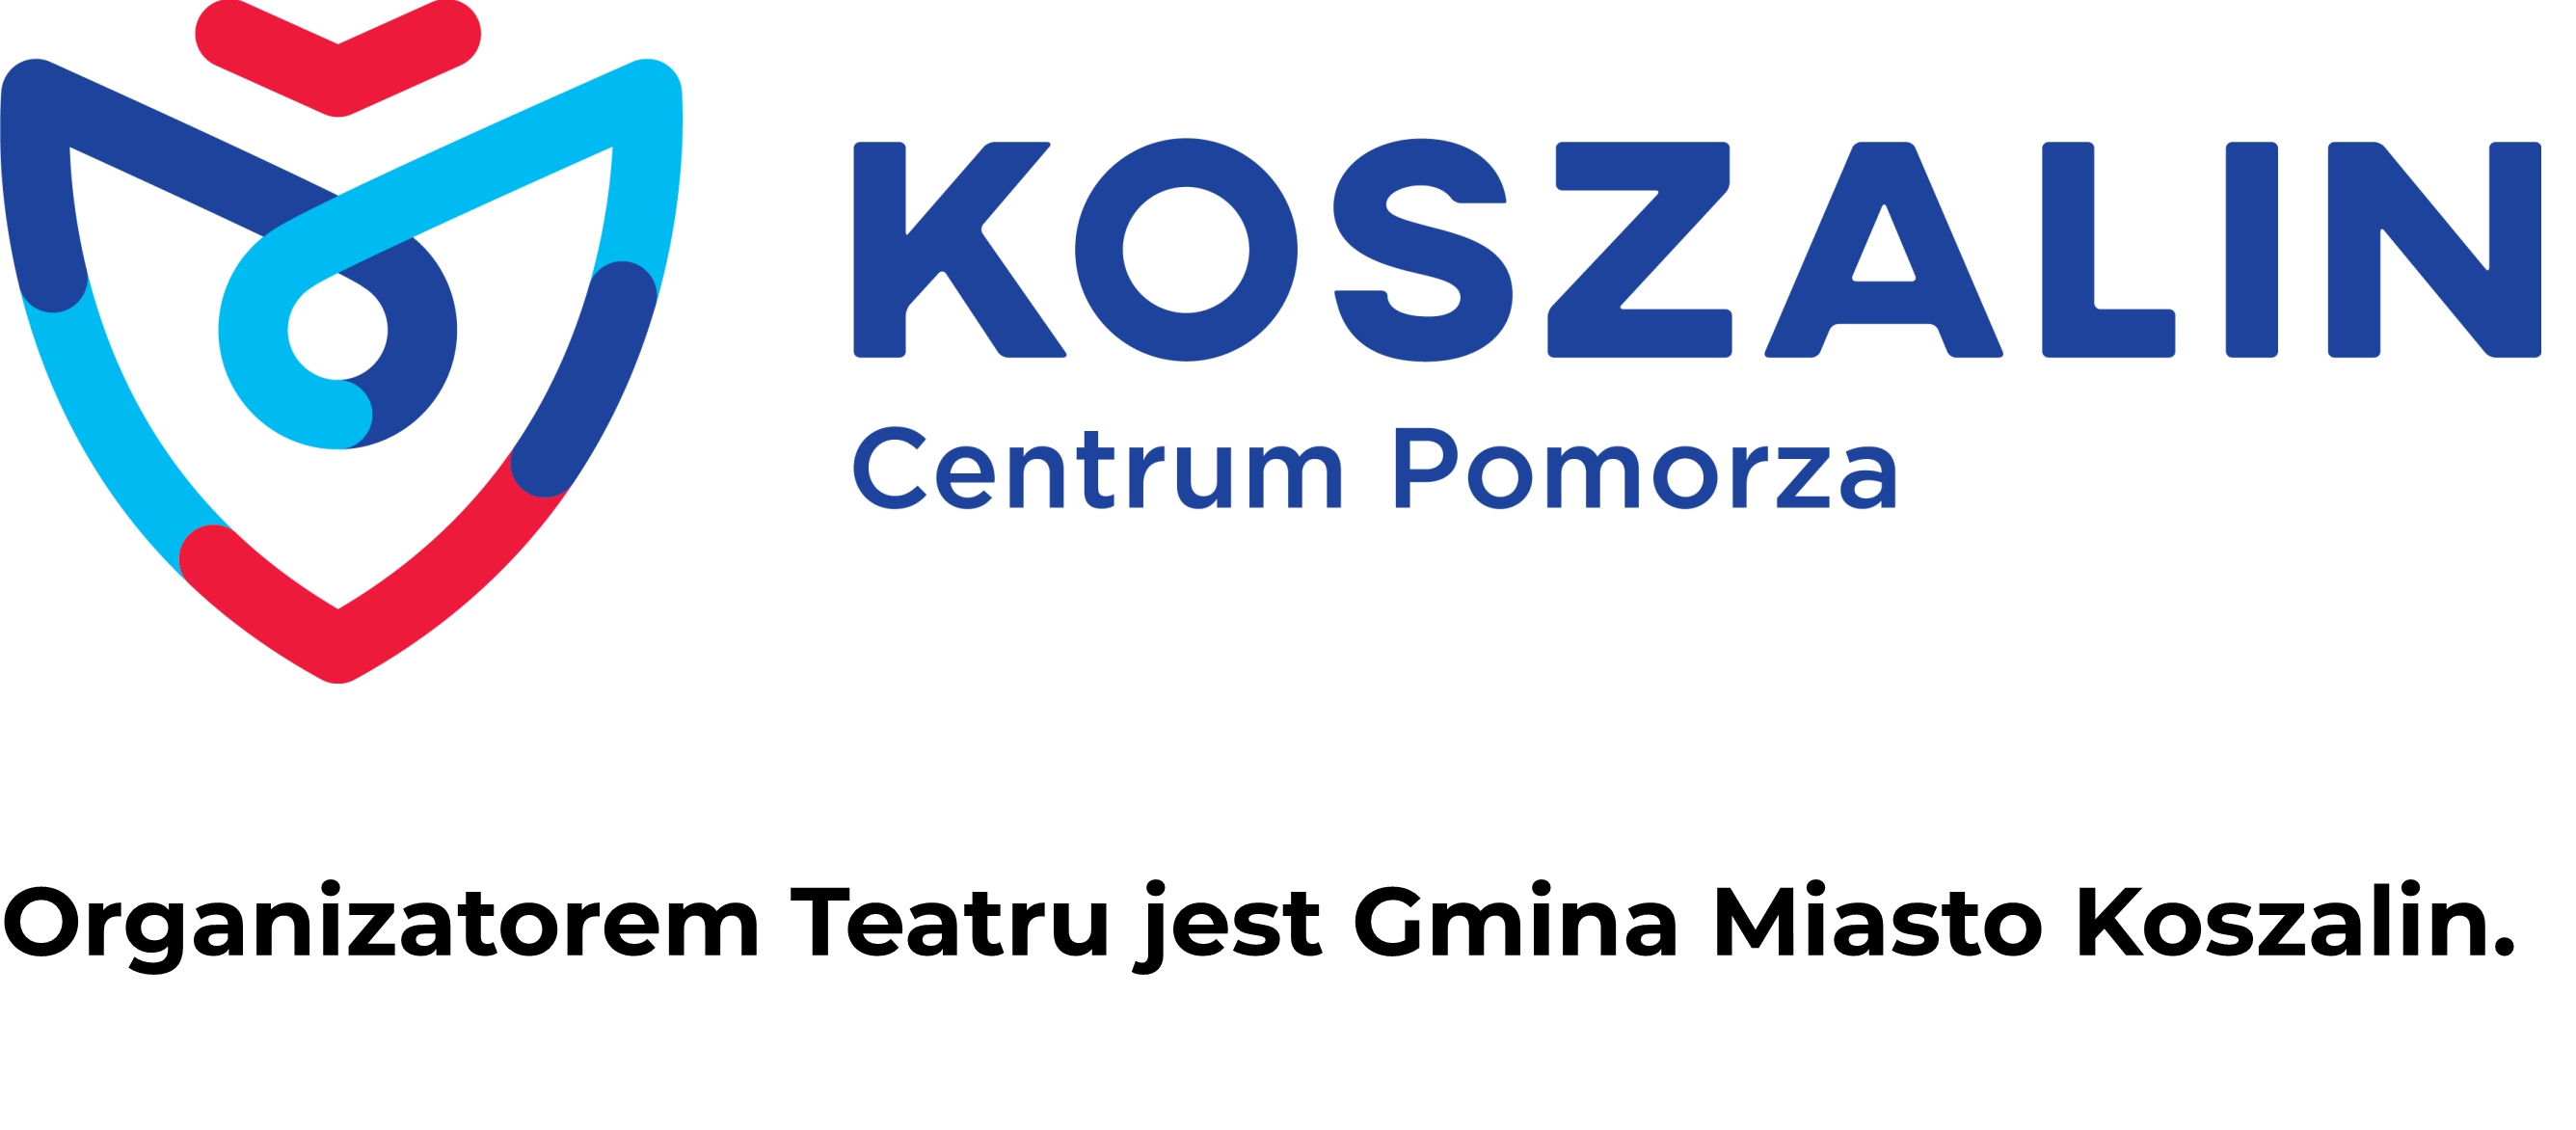 Obrazek przedstawia: logo promujące Koszalin Centrum Pomorza. Obrazek jest podlinkowany do strony www.koszalin.pl